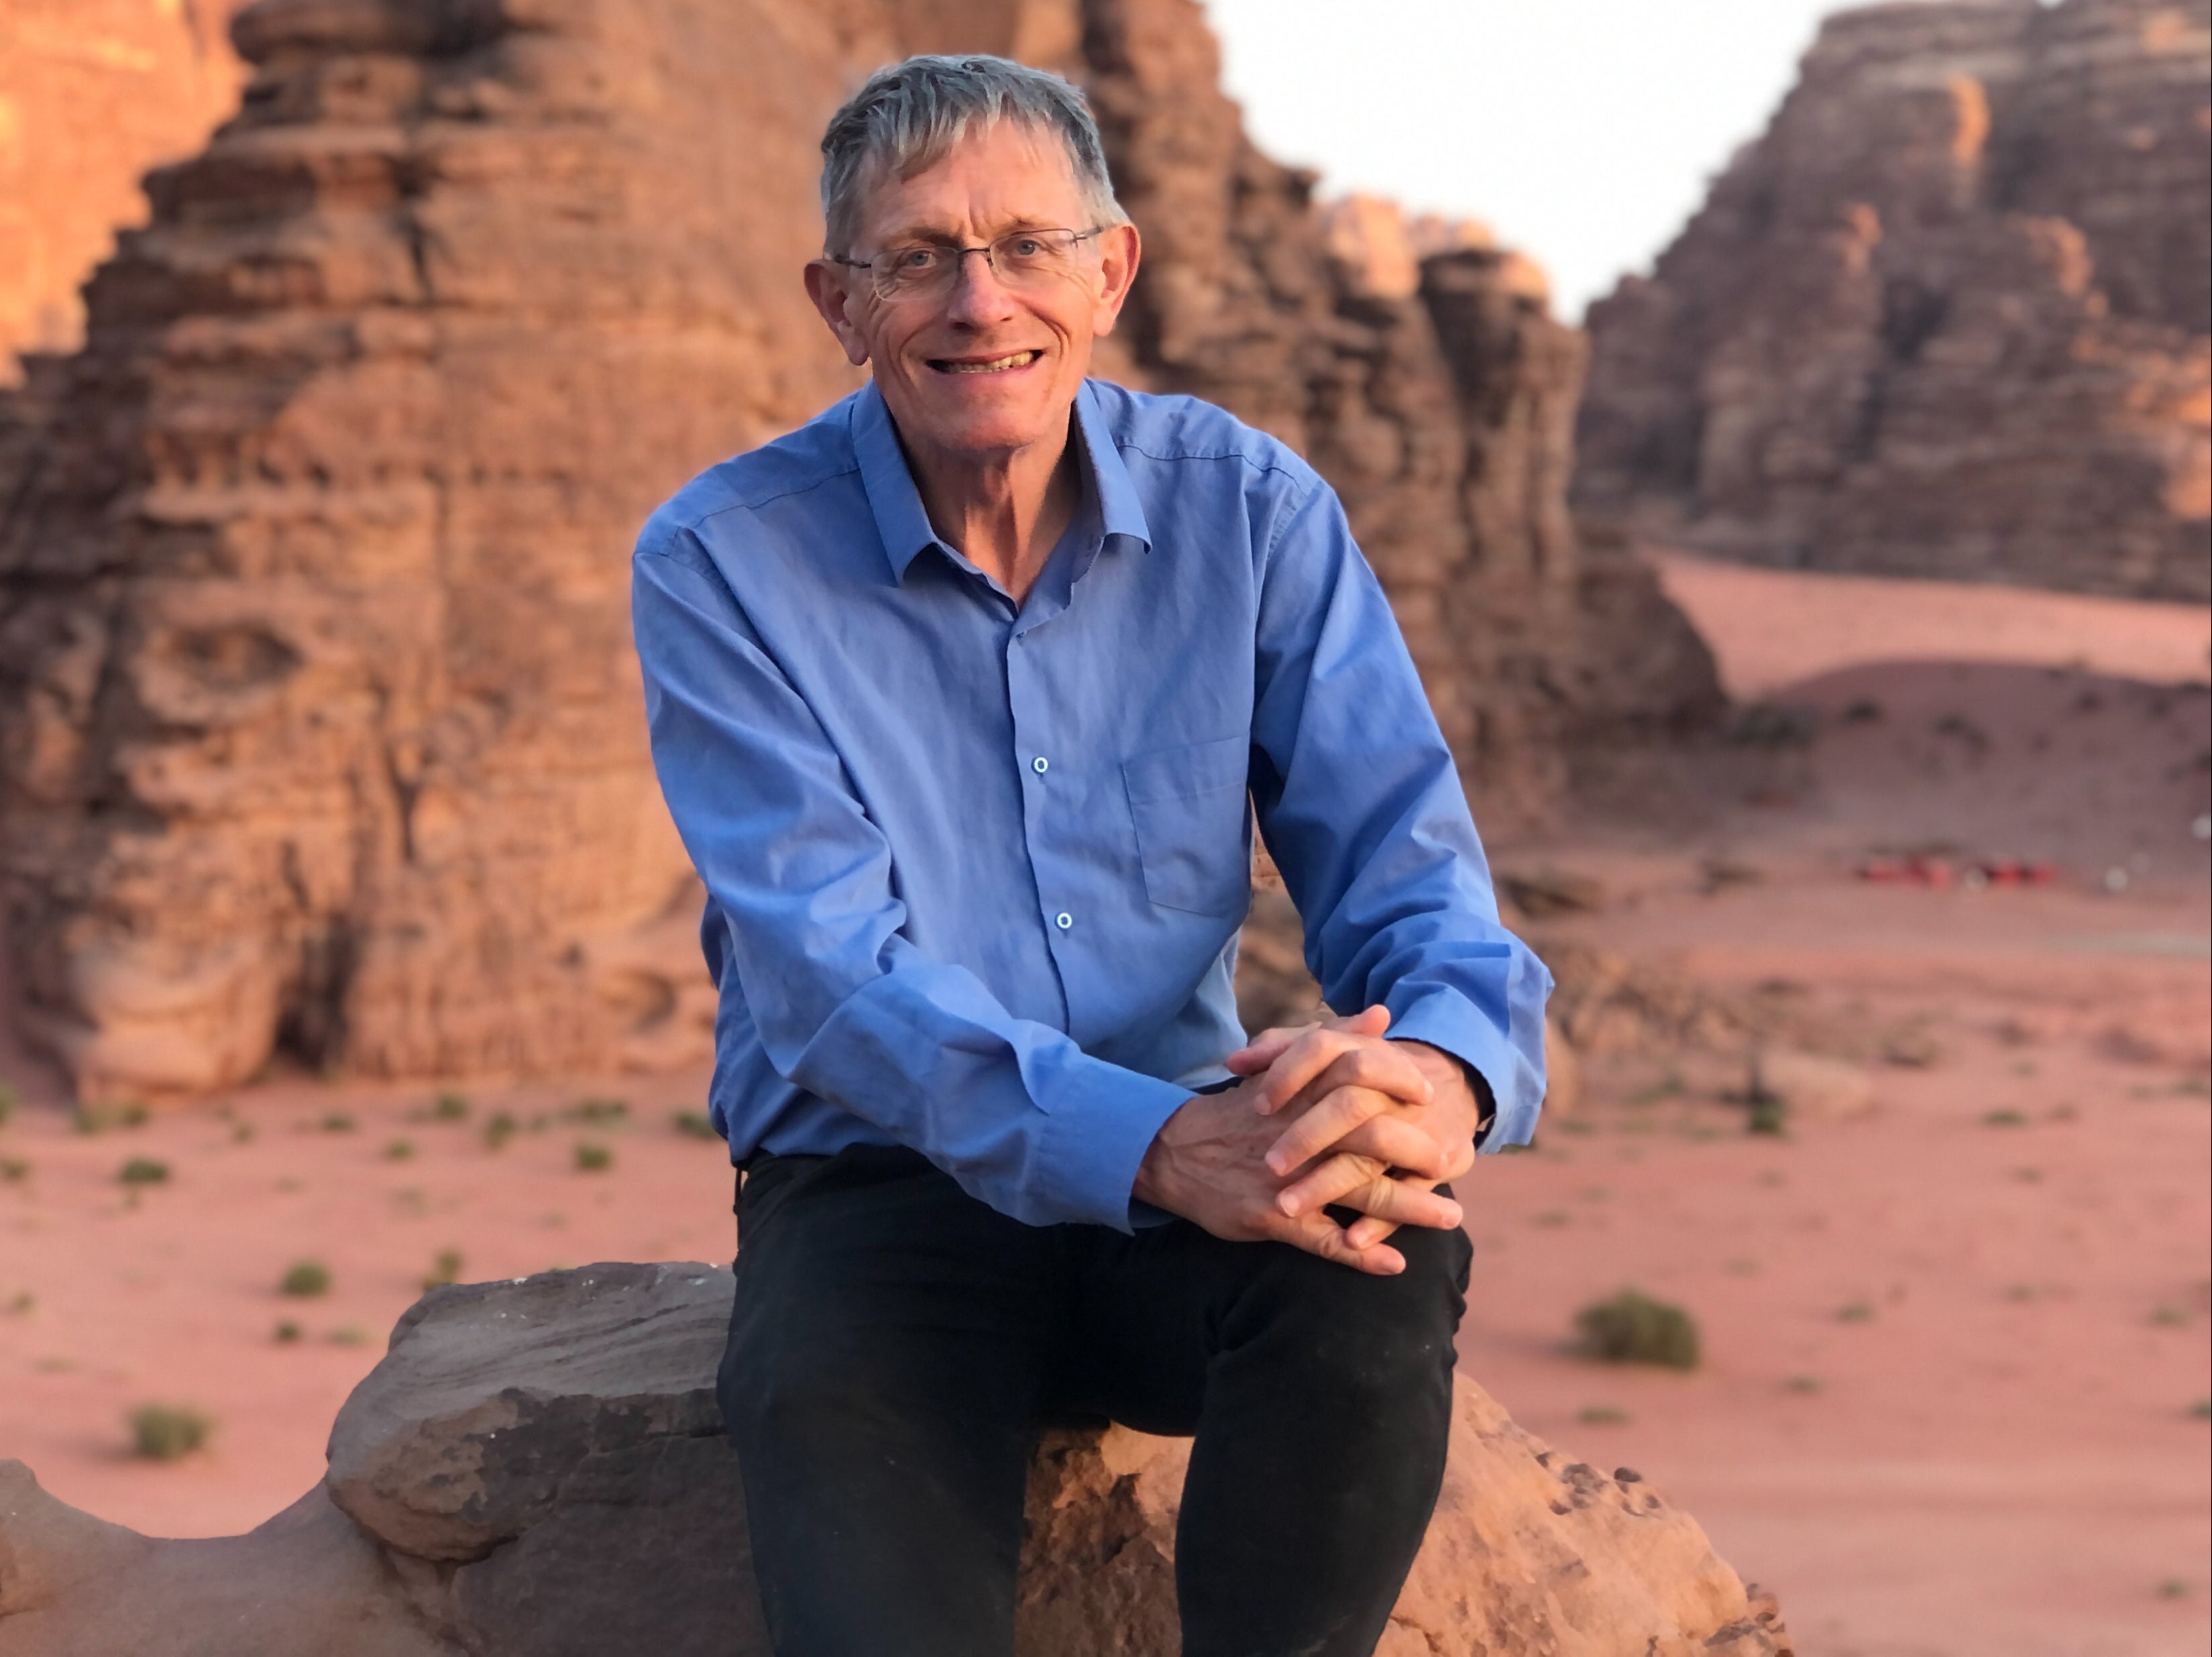 Dune roaming: Simon Calder in Arabia